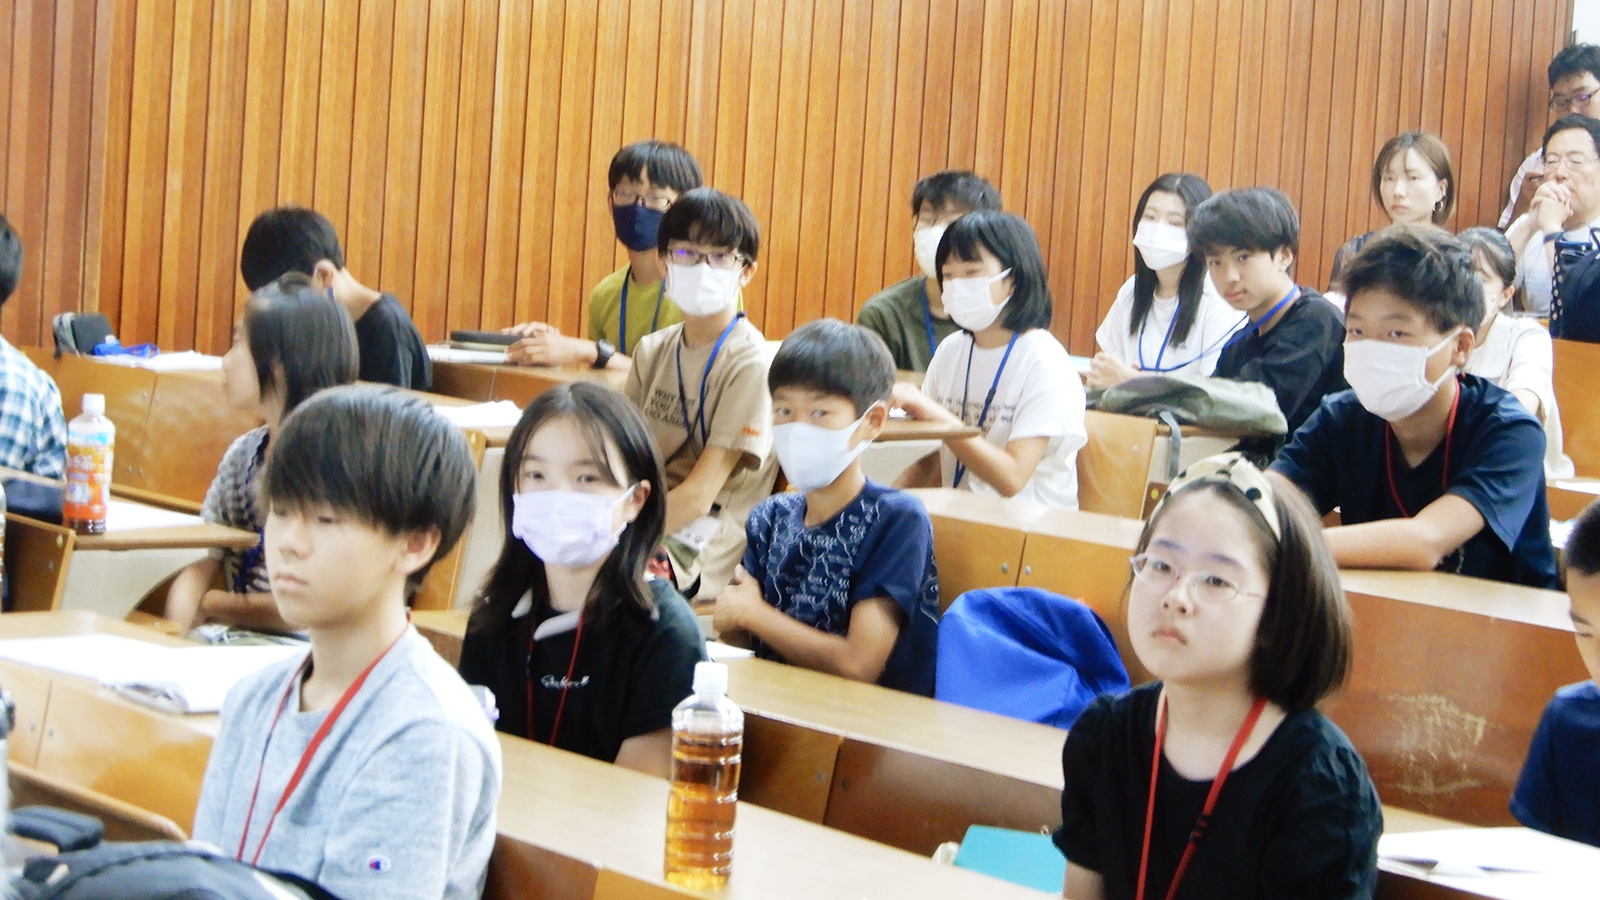 静岡STEAMフューチャースクールに通う受講生の様子